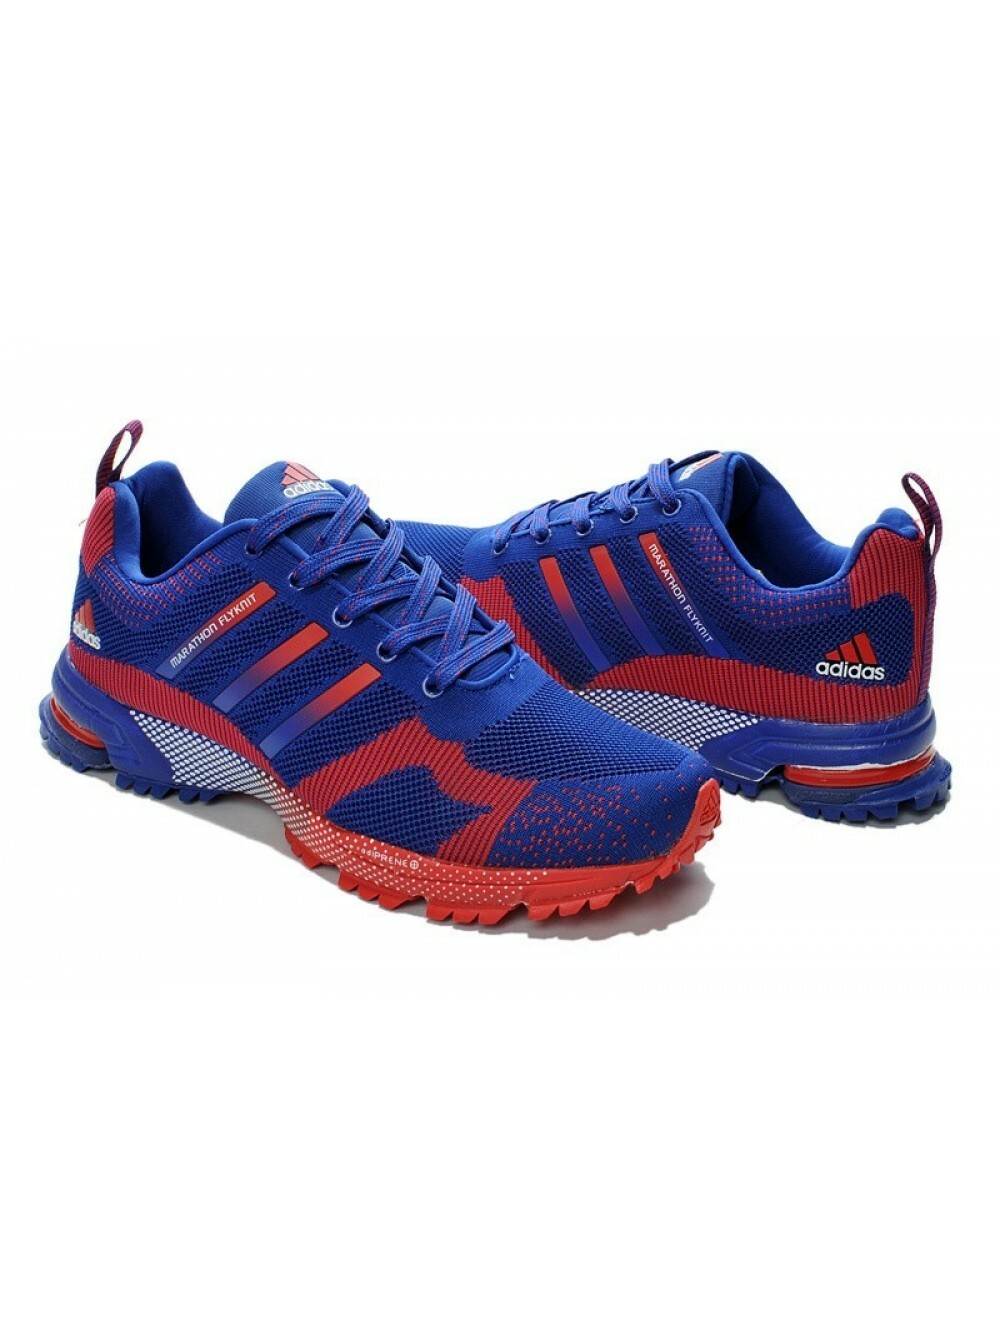 Адидас красно синие. Adidas Marathon Flyknit. Кроссовки адидас мужские a243-4. Adidas Marathon Flyknit Blue. Adidas Marathon Flyknit Blue/Red.